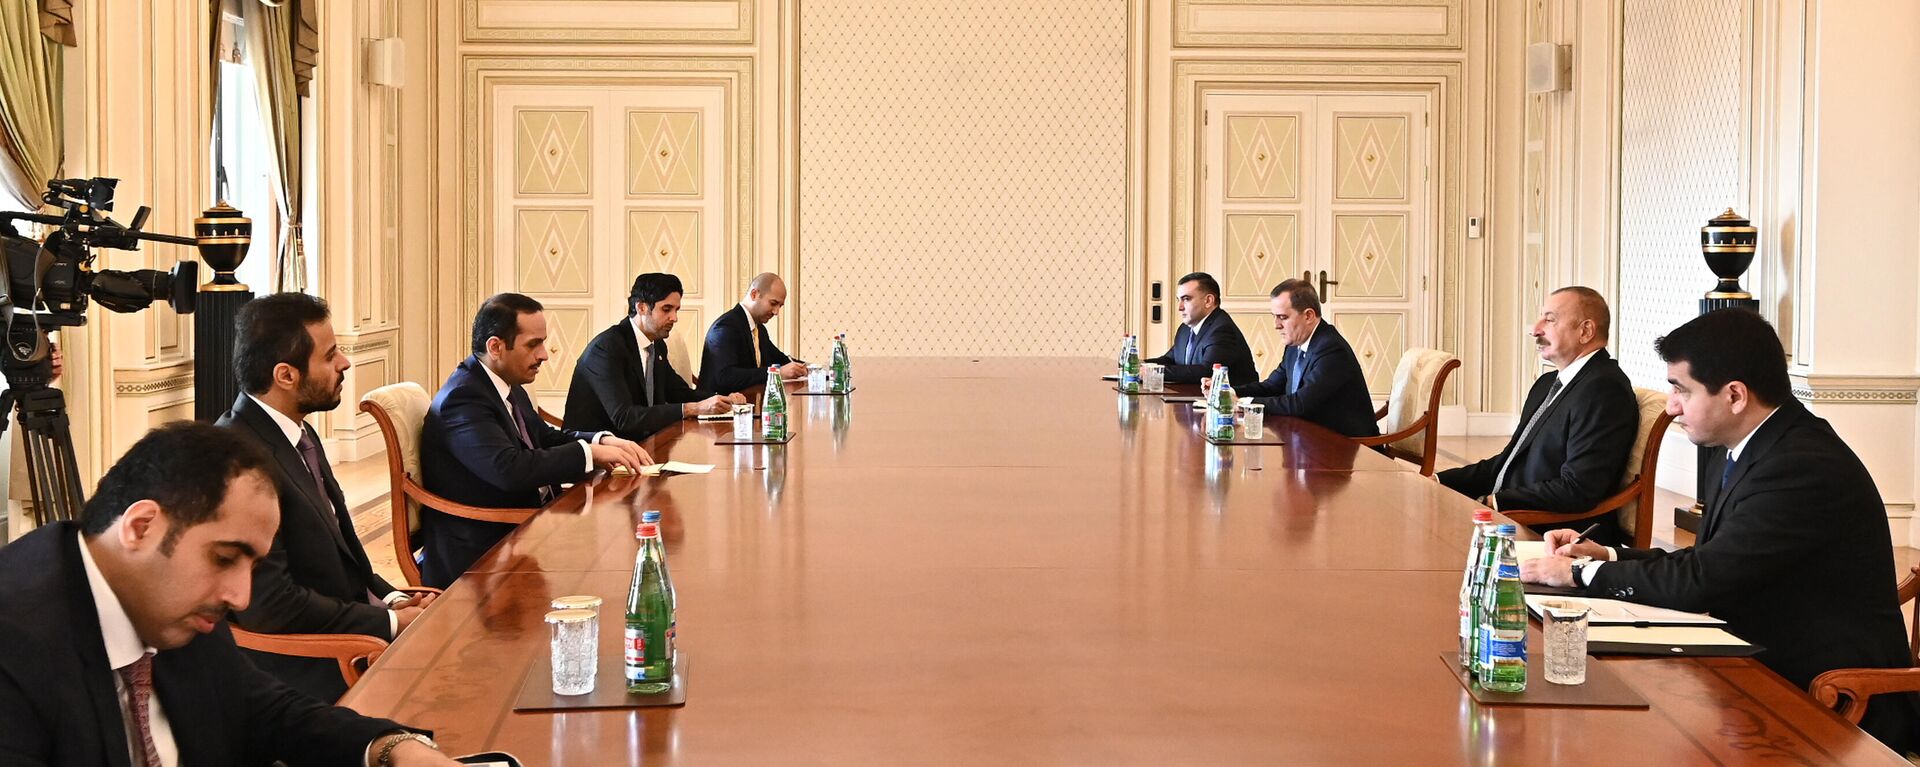 Президент Ильхам Алиев принял делегацию Катара во главе с вице-премьером этой страны шейхом Мохаммедом бин Абдулрахманом Аль-Тани - Sputnik Азербайджан, 1920, 18.10.2021